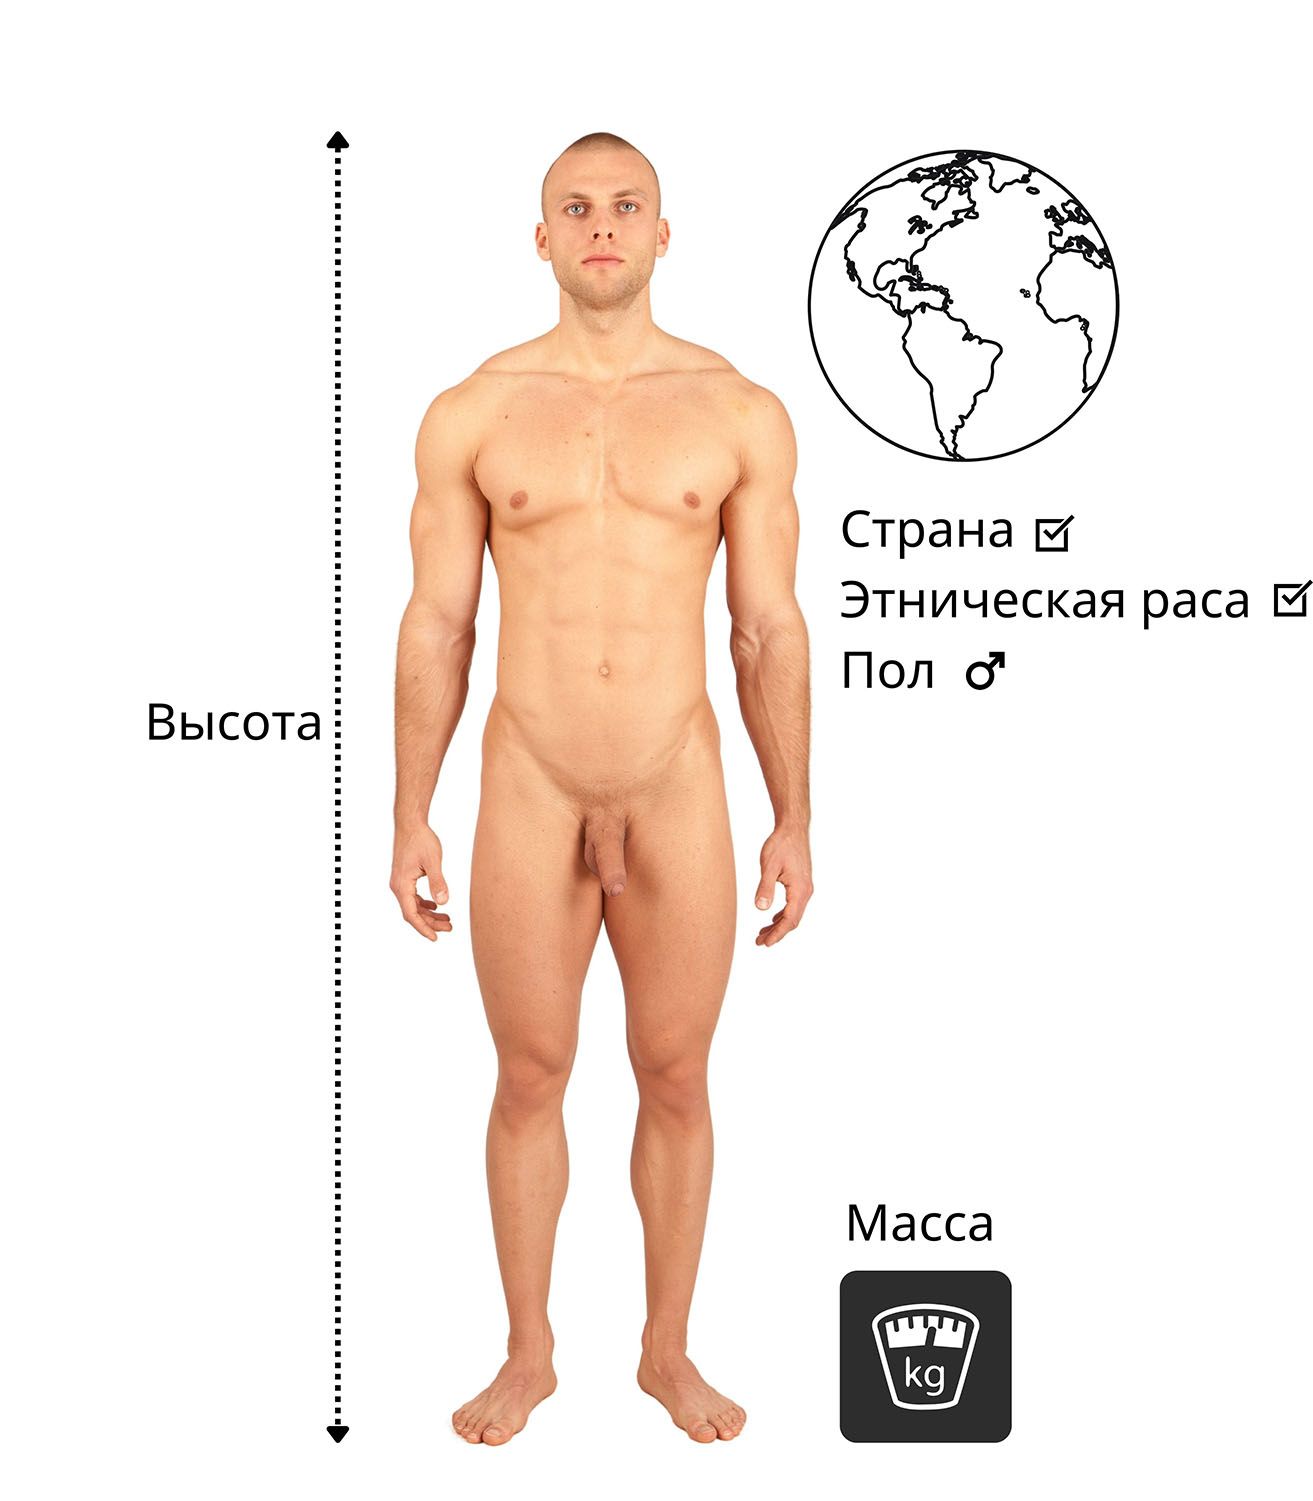 Обнаженный мужчина измеряет свой рост, вес и этническое происхождение.